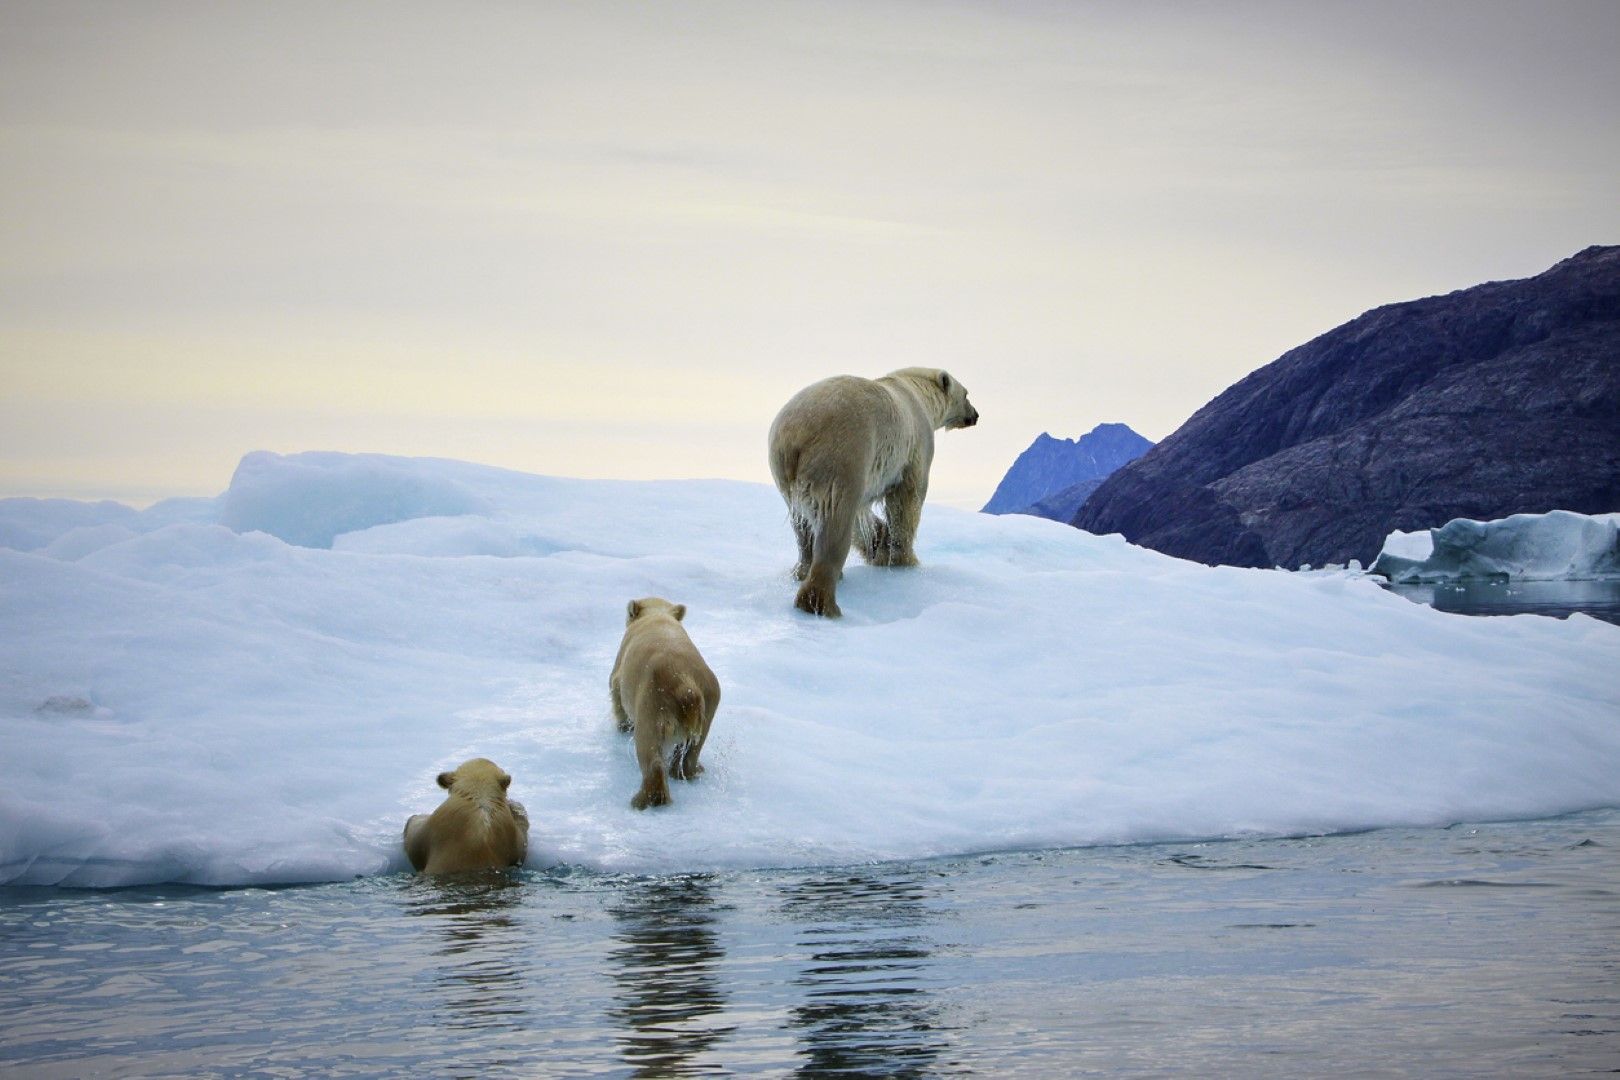 При топенето си гренландският лед замърсява с живак океана